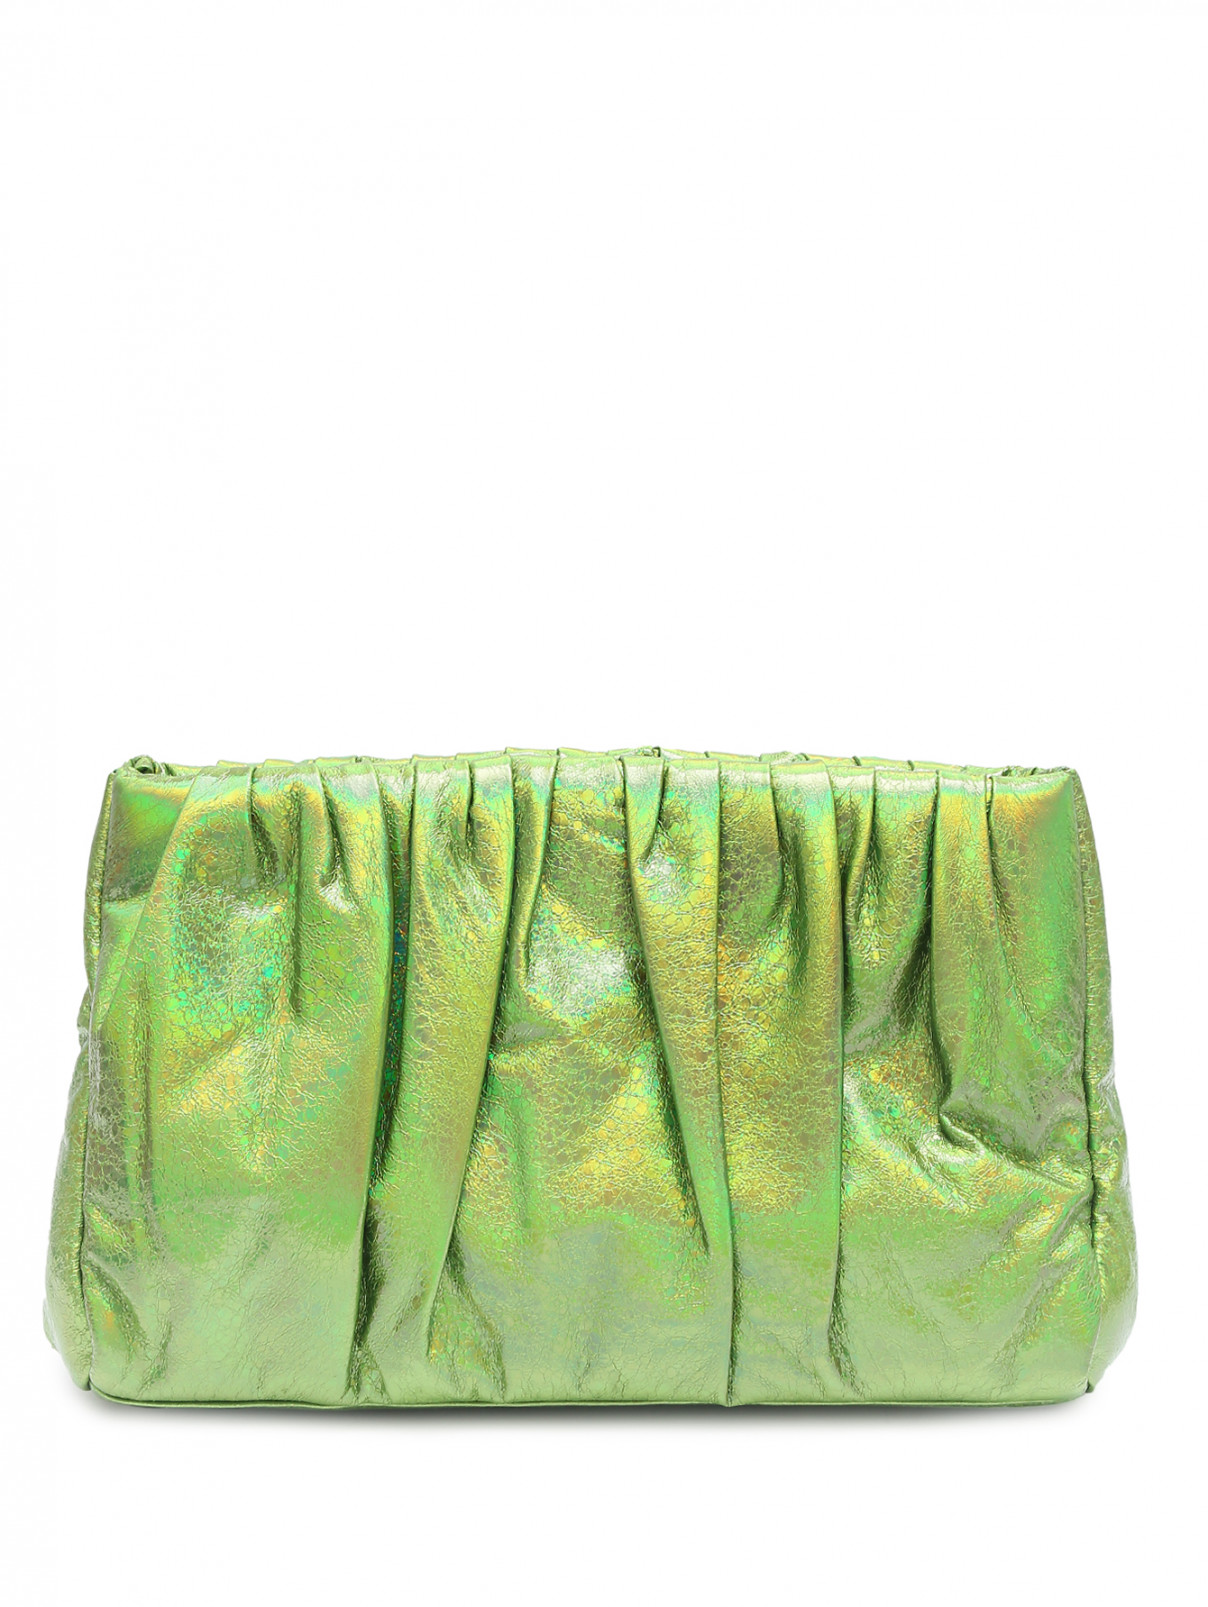 Сумка с металлизированным блеском Essentiel Antwerp  –  Общий вид  – Цвет:  Зеленый